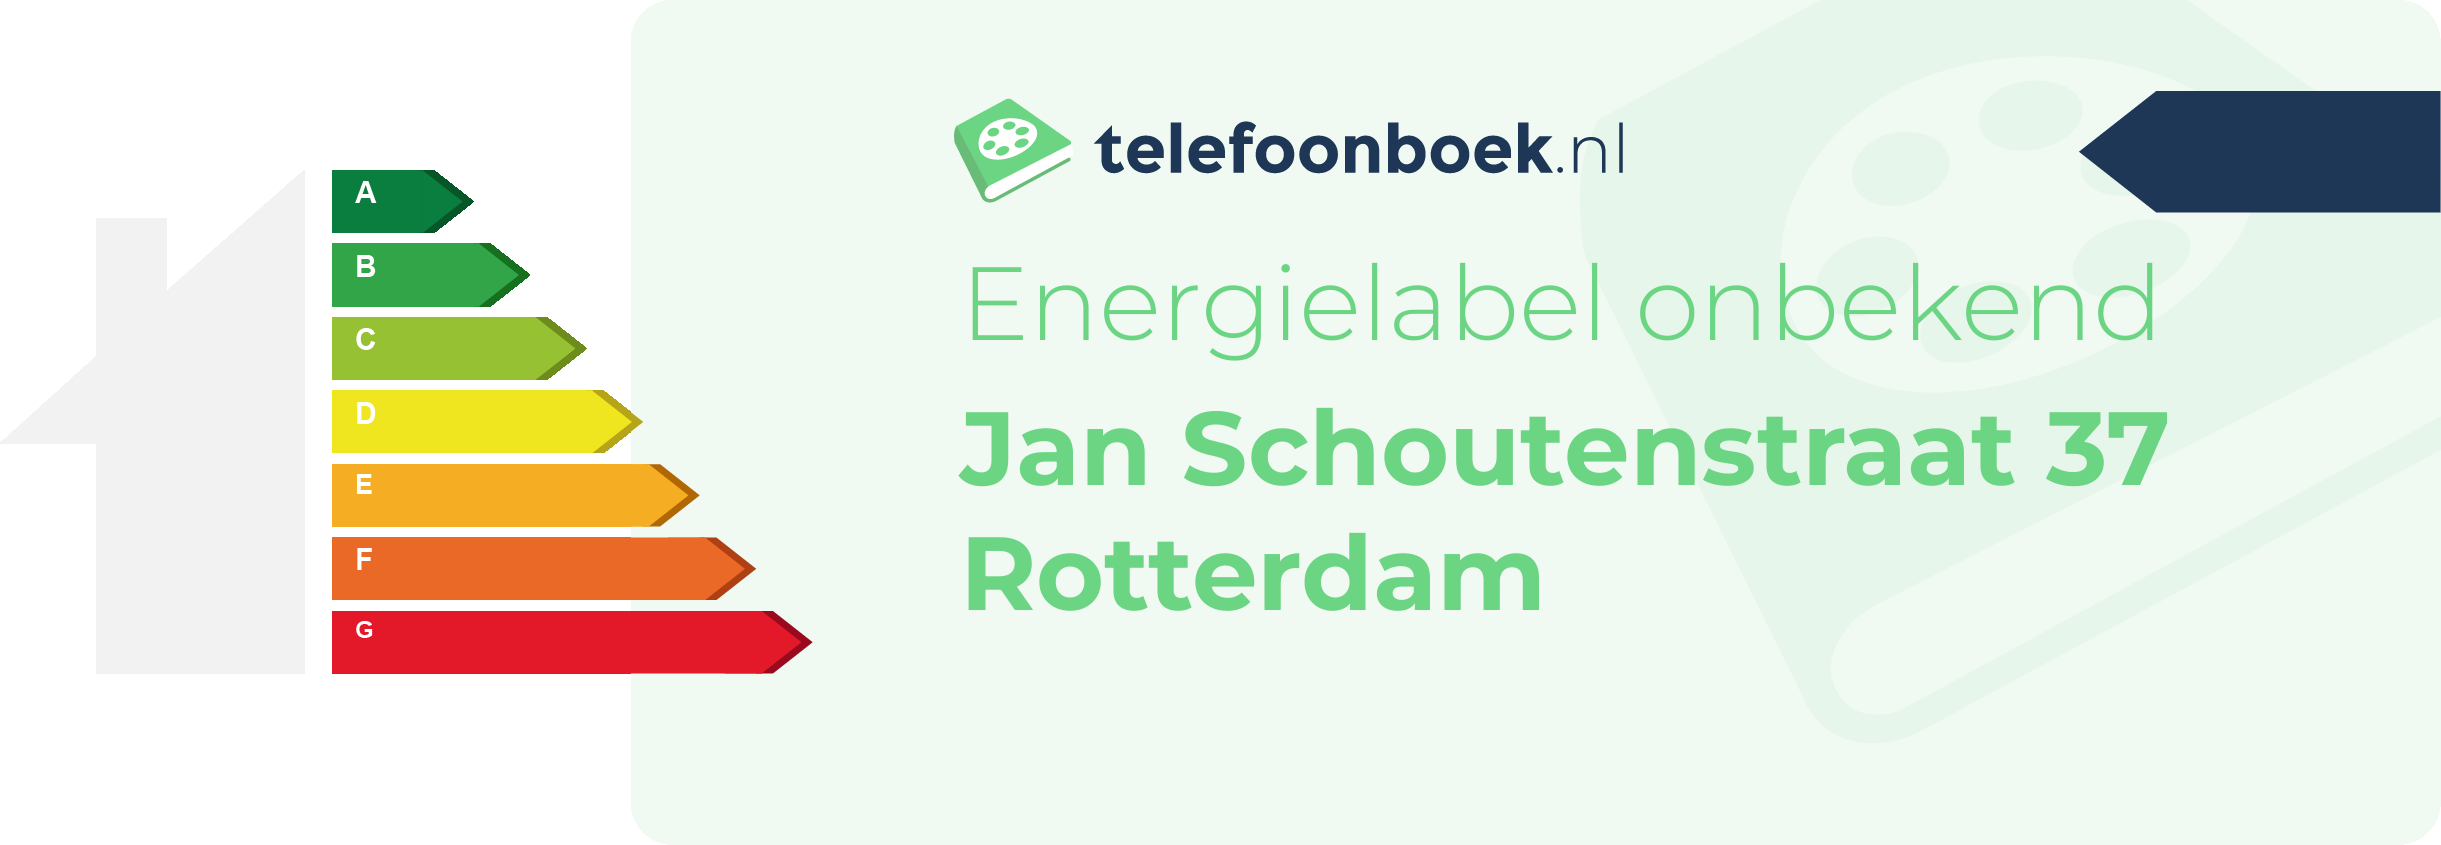 Energielabel Jan Schoutenstraat 37 Rotterdam